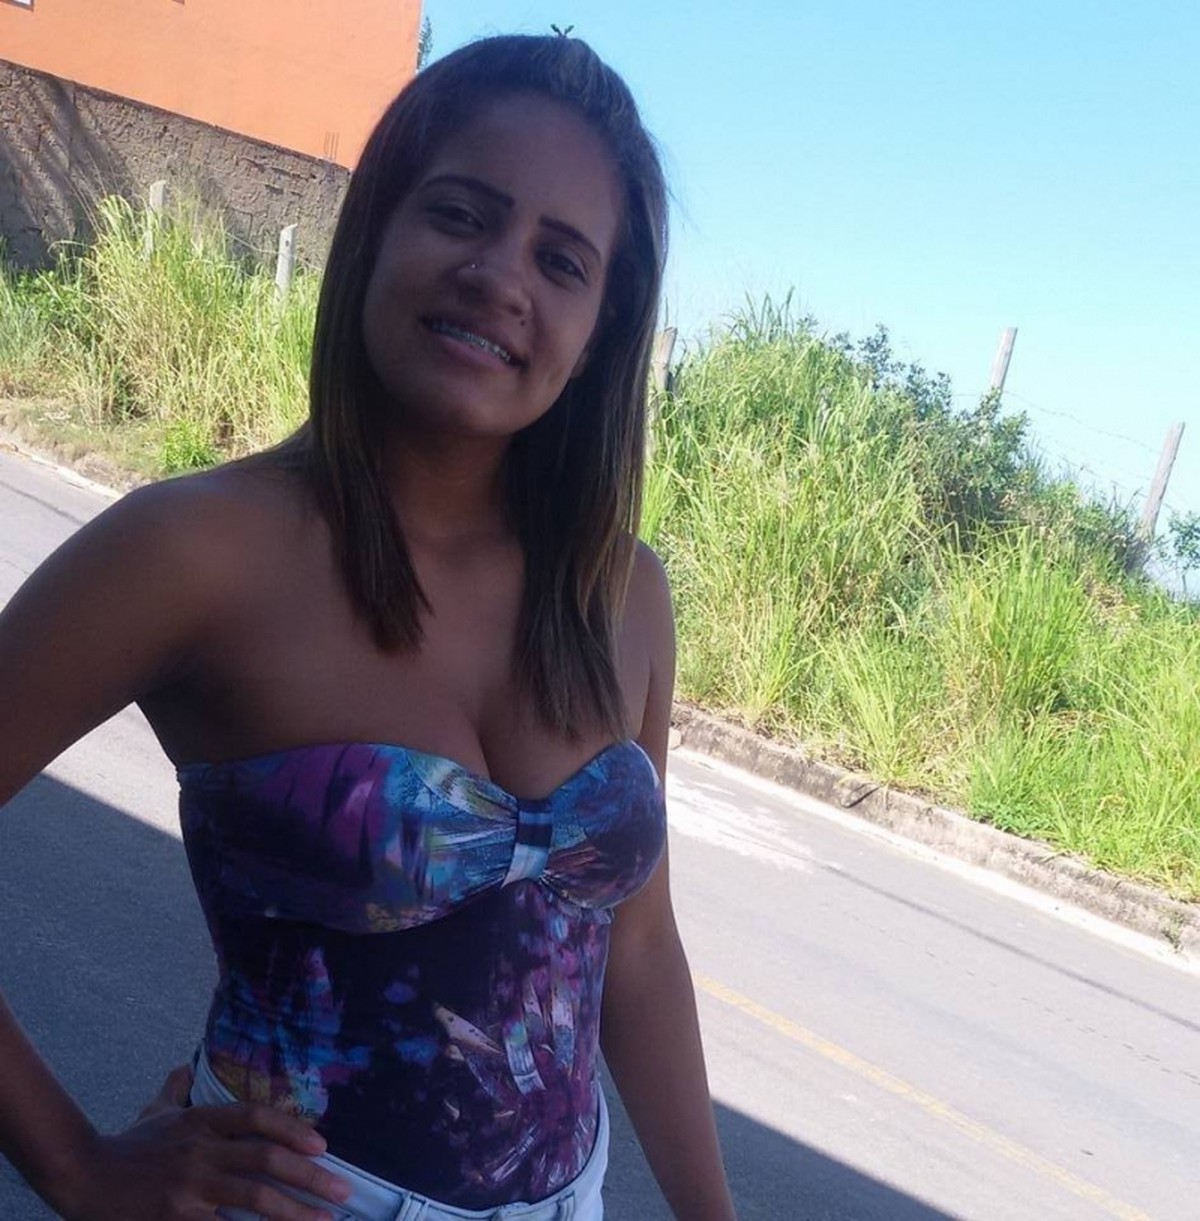 Corpo de vendedora desaparecida é encontrado no Rio Itapemirim ... - Globo.com